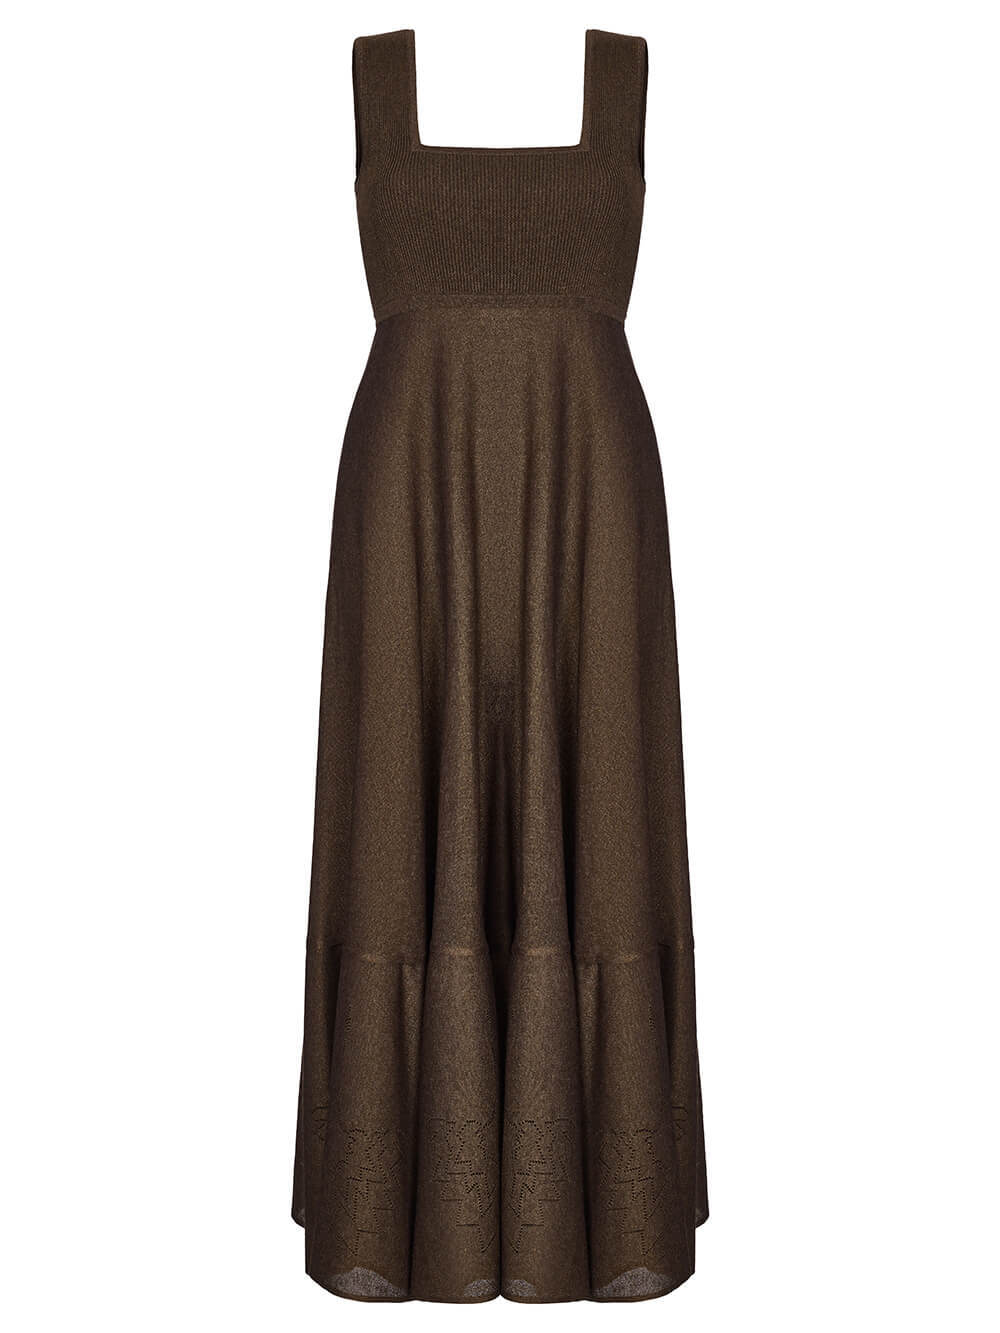 Женское платье коричневого цвета из вискозы - фото 1